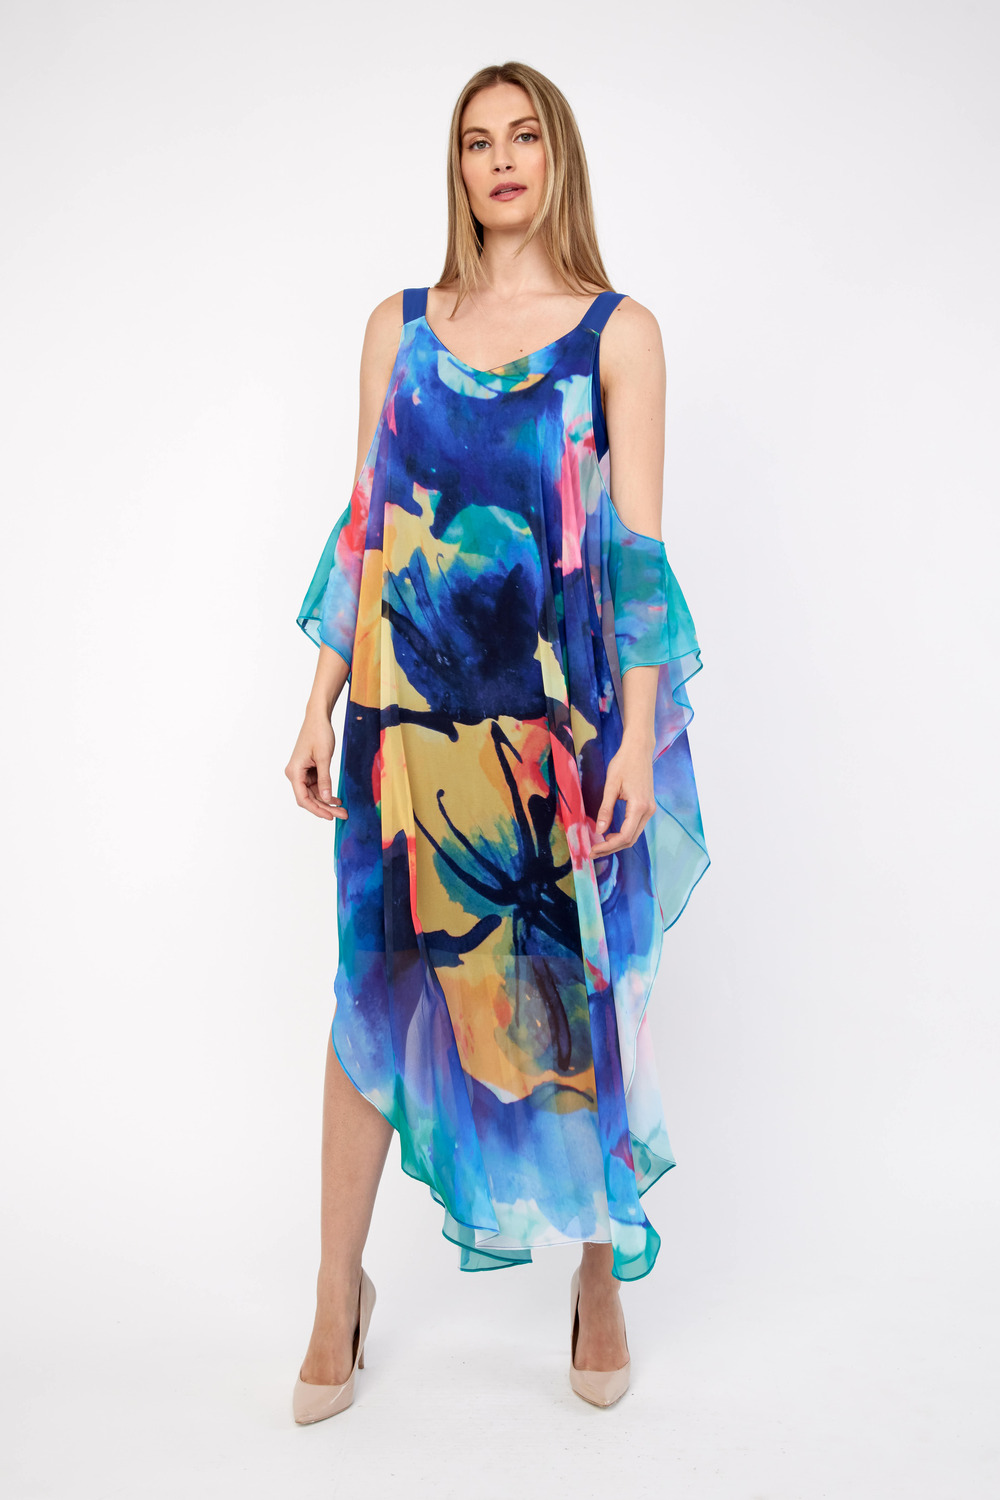 Printed Maxi Dress Style 236661U. Blue/yell